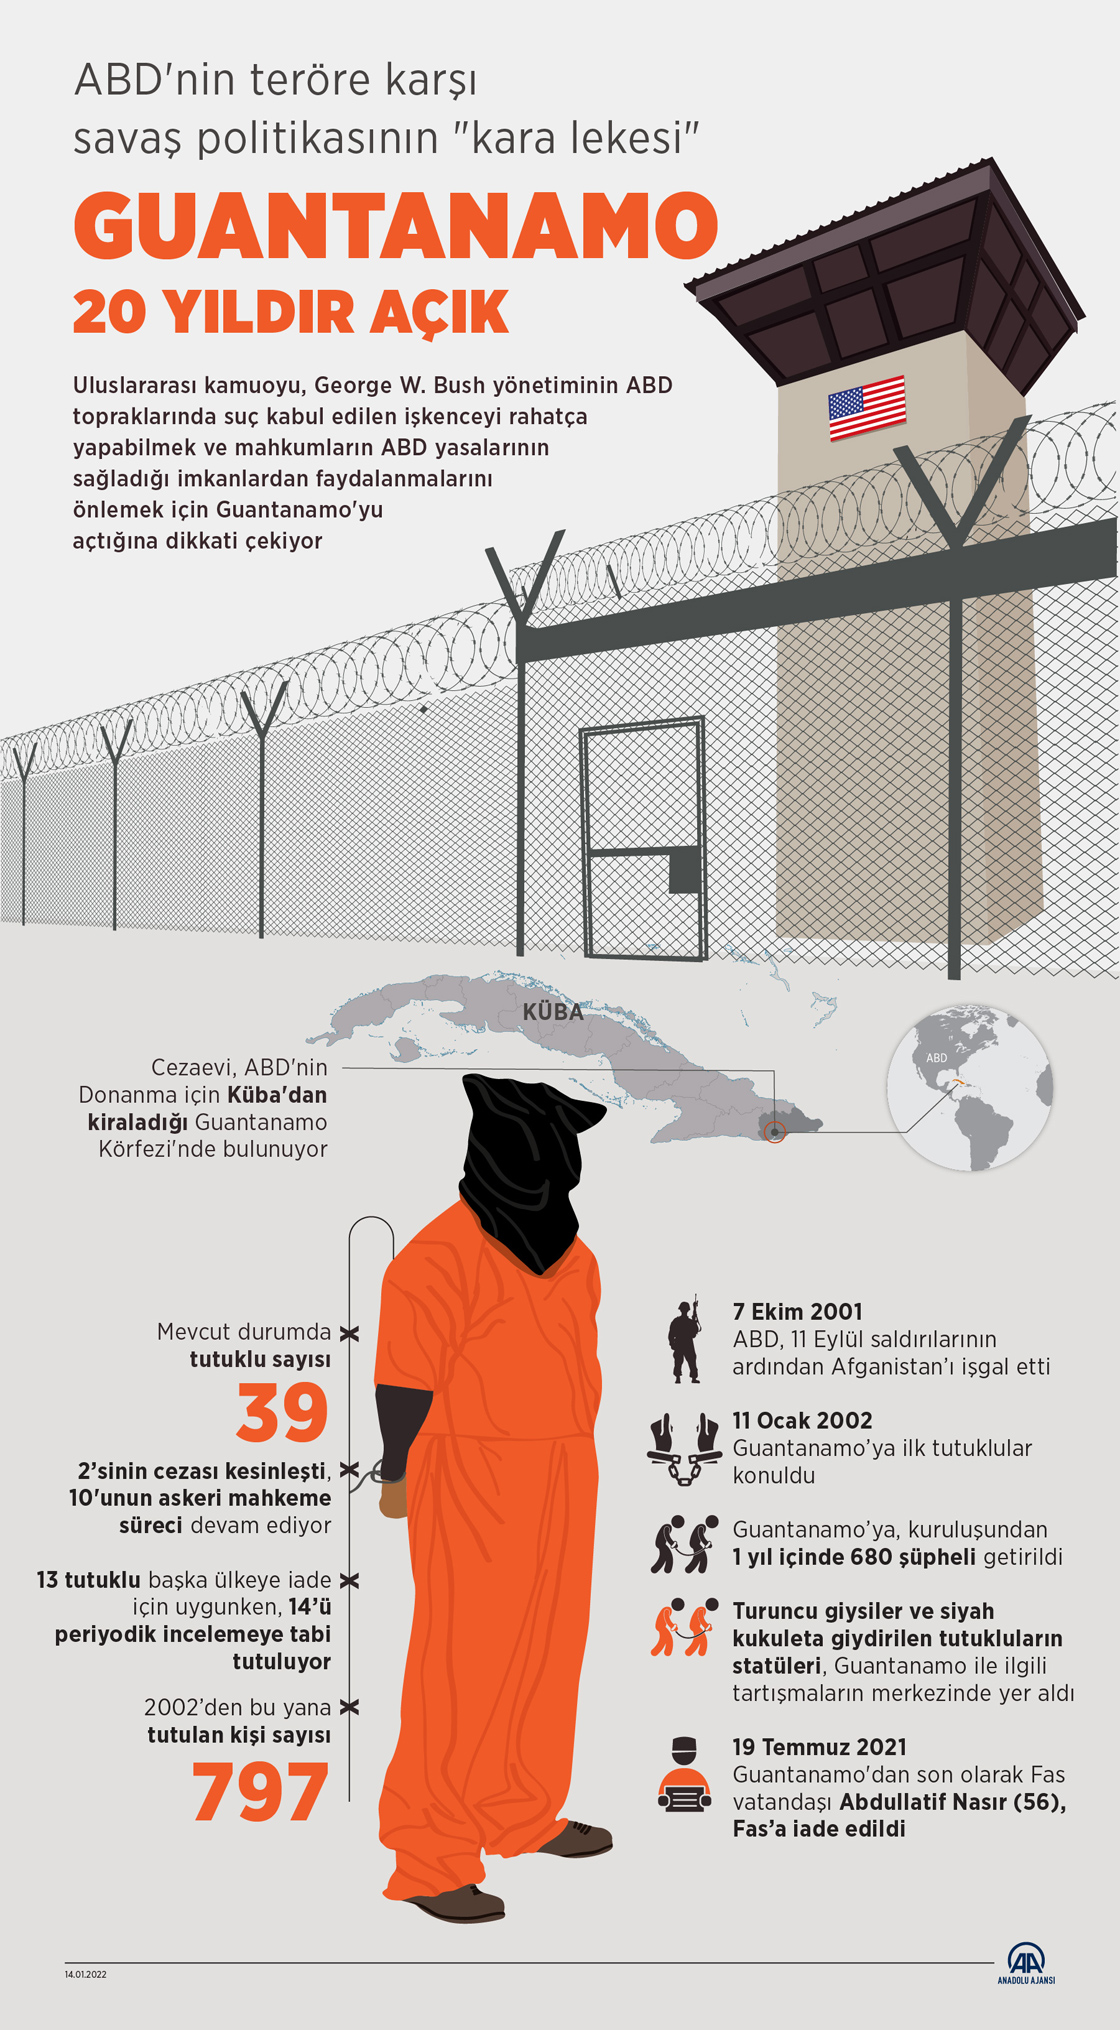 ABD'nin teröre karşı savaş politikasının "kara lekesi" Guantanamo 20 yıldır açık